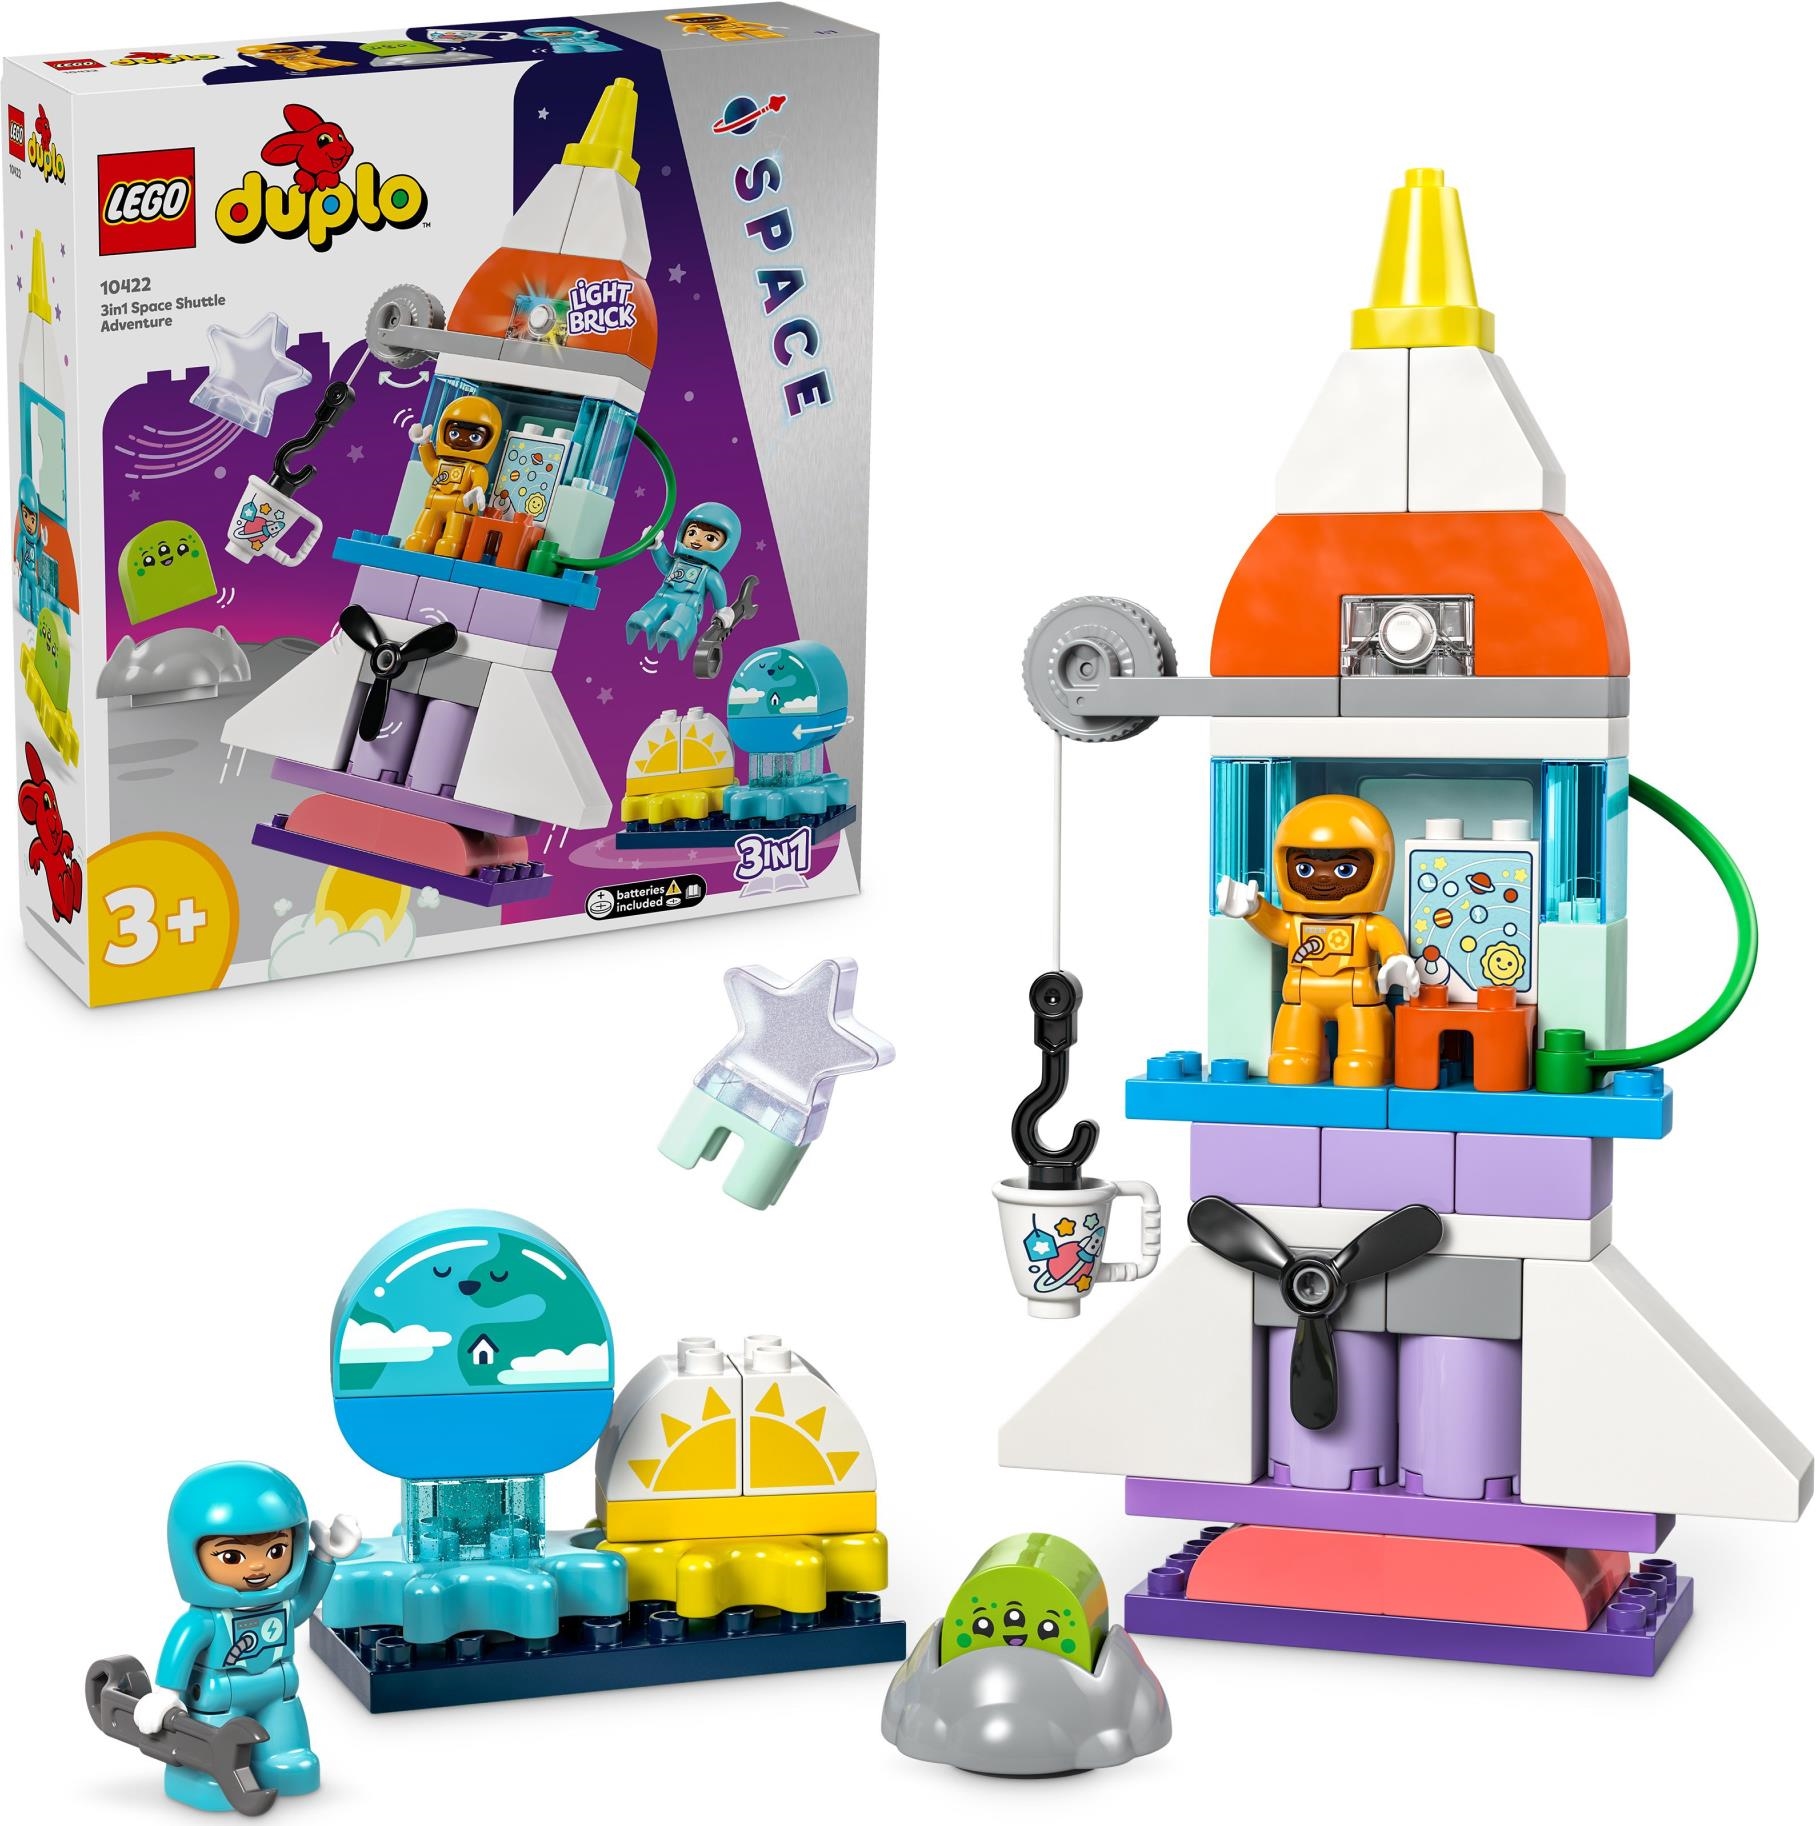 Lego: 10422 - Duplo Town - Avventura Dello Space Shuttle 3 In 1